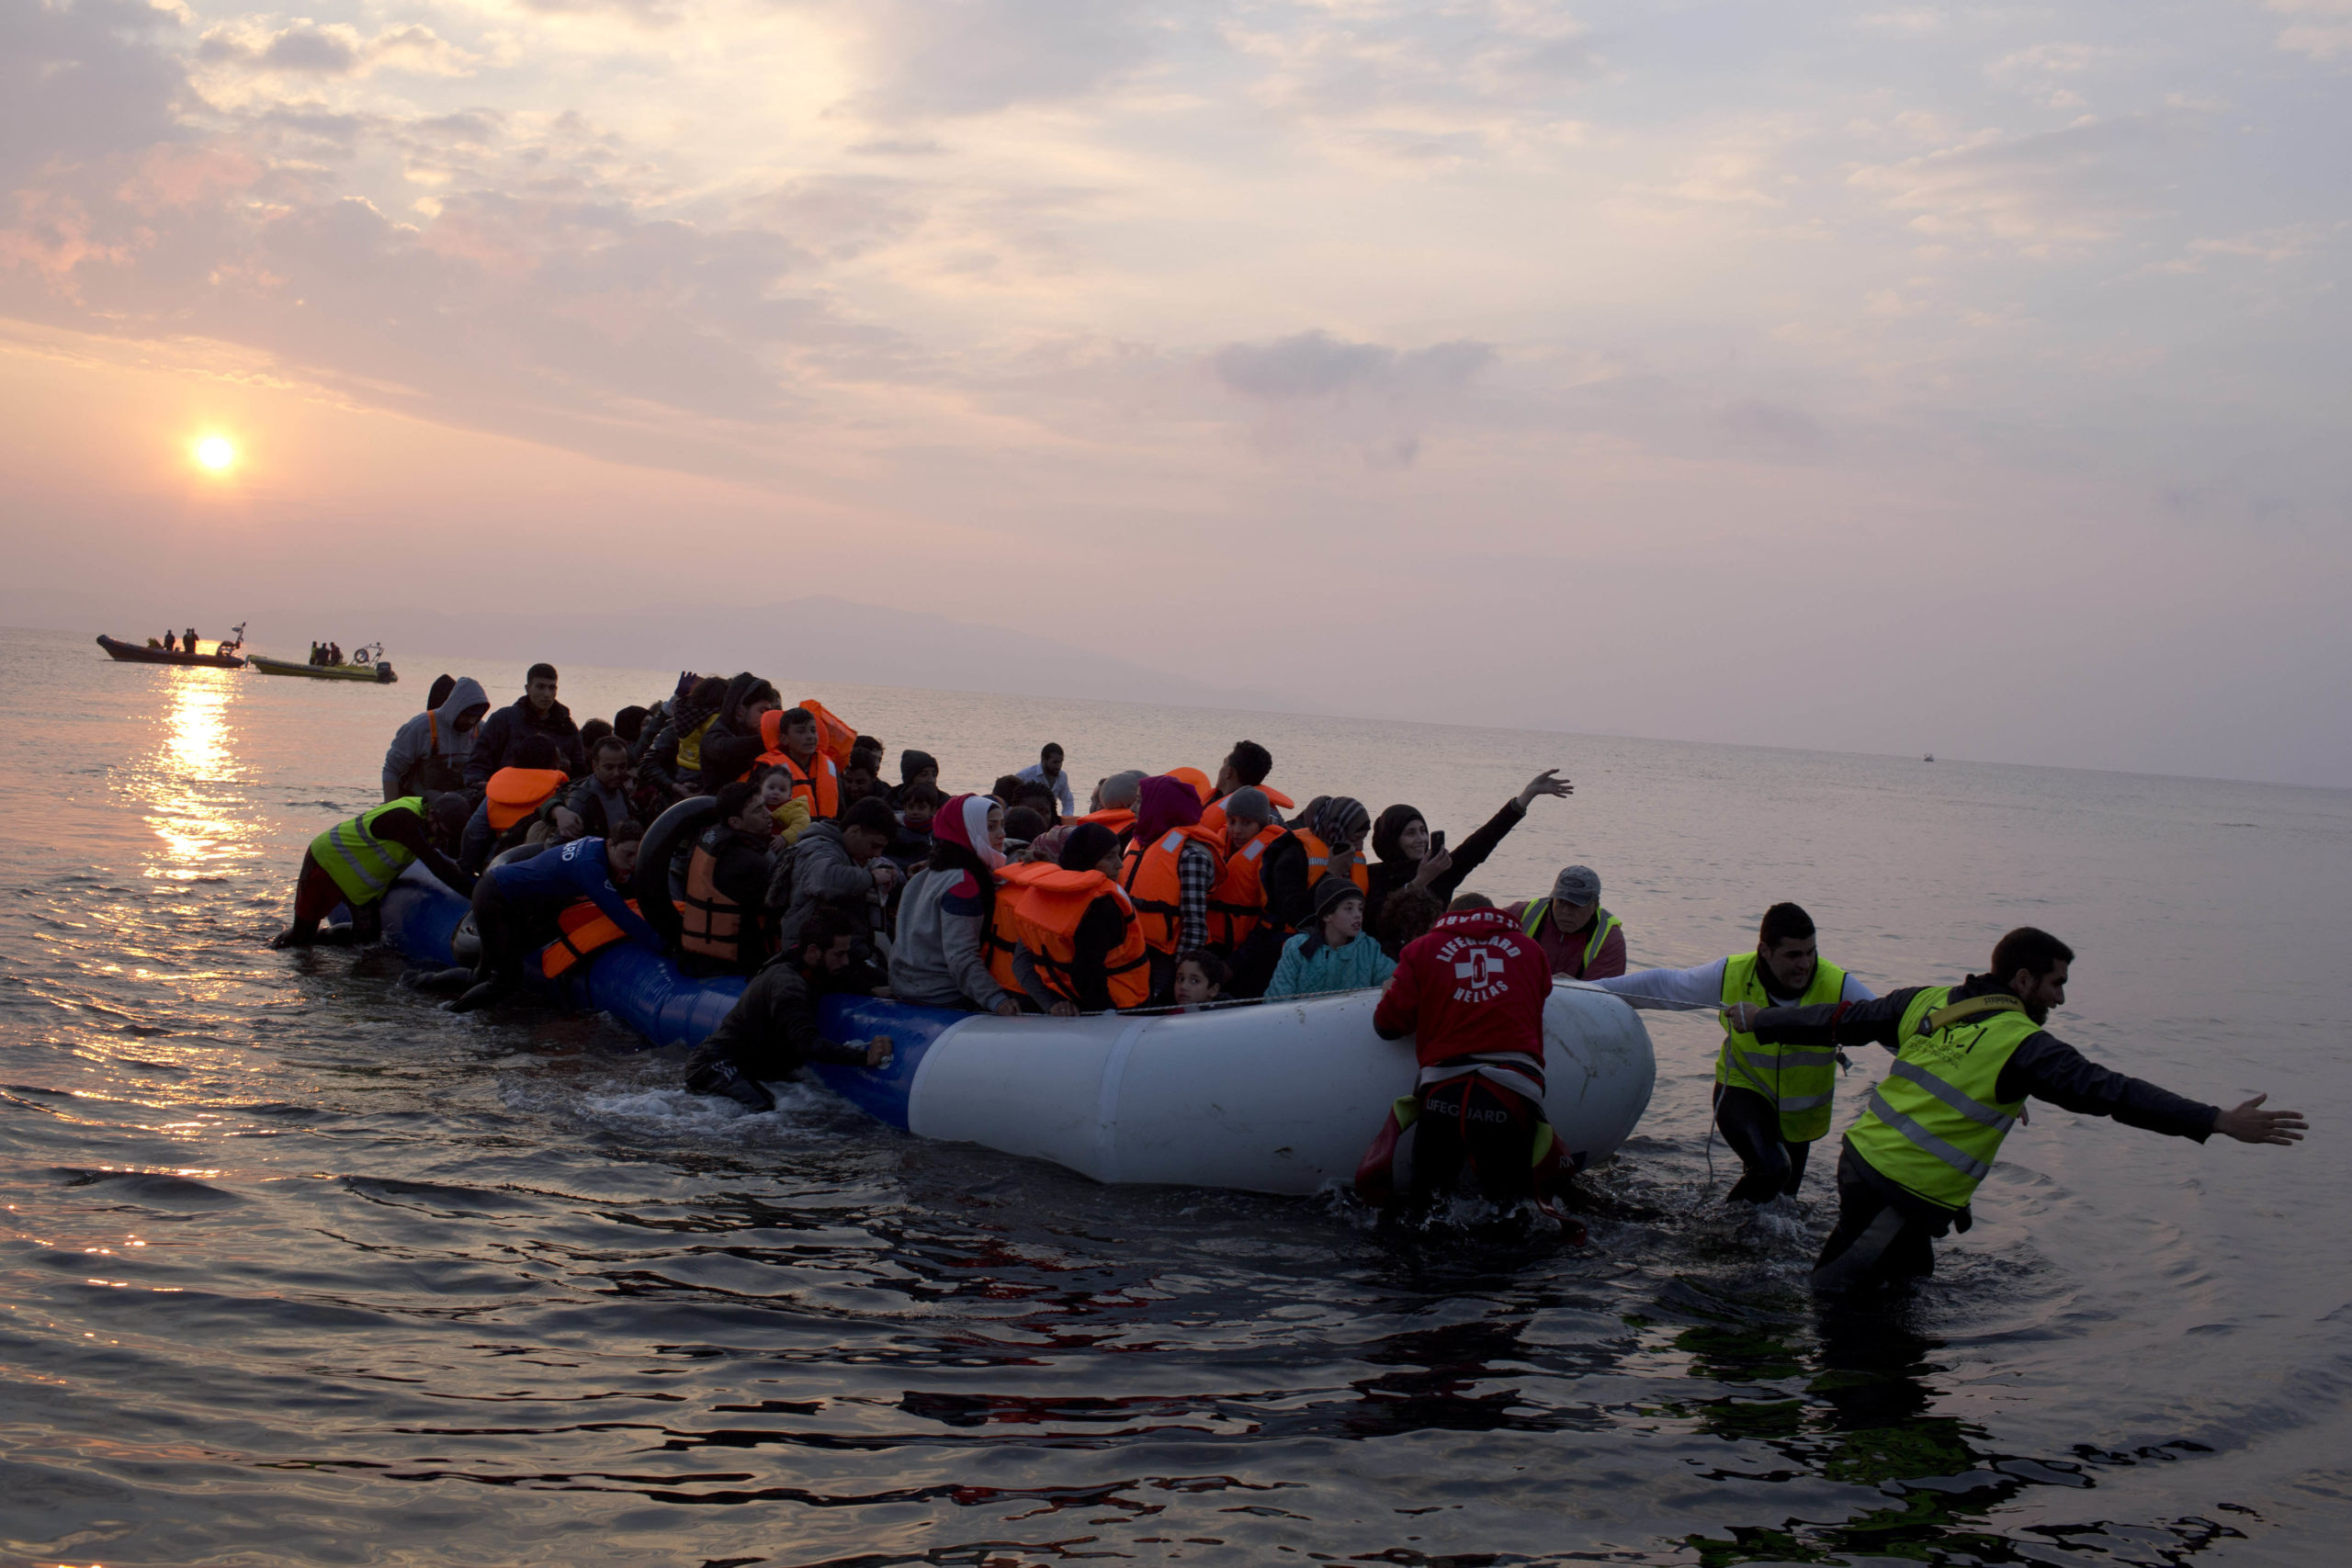 Βρετανία – Μεταναστευτικό: Μηδενικές οι ροές στη θάλασσα της Μάγχης για δύο εβδομάδες